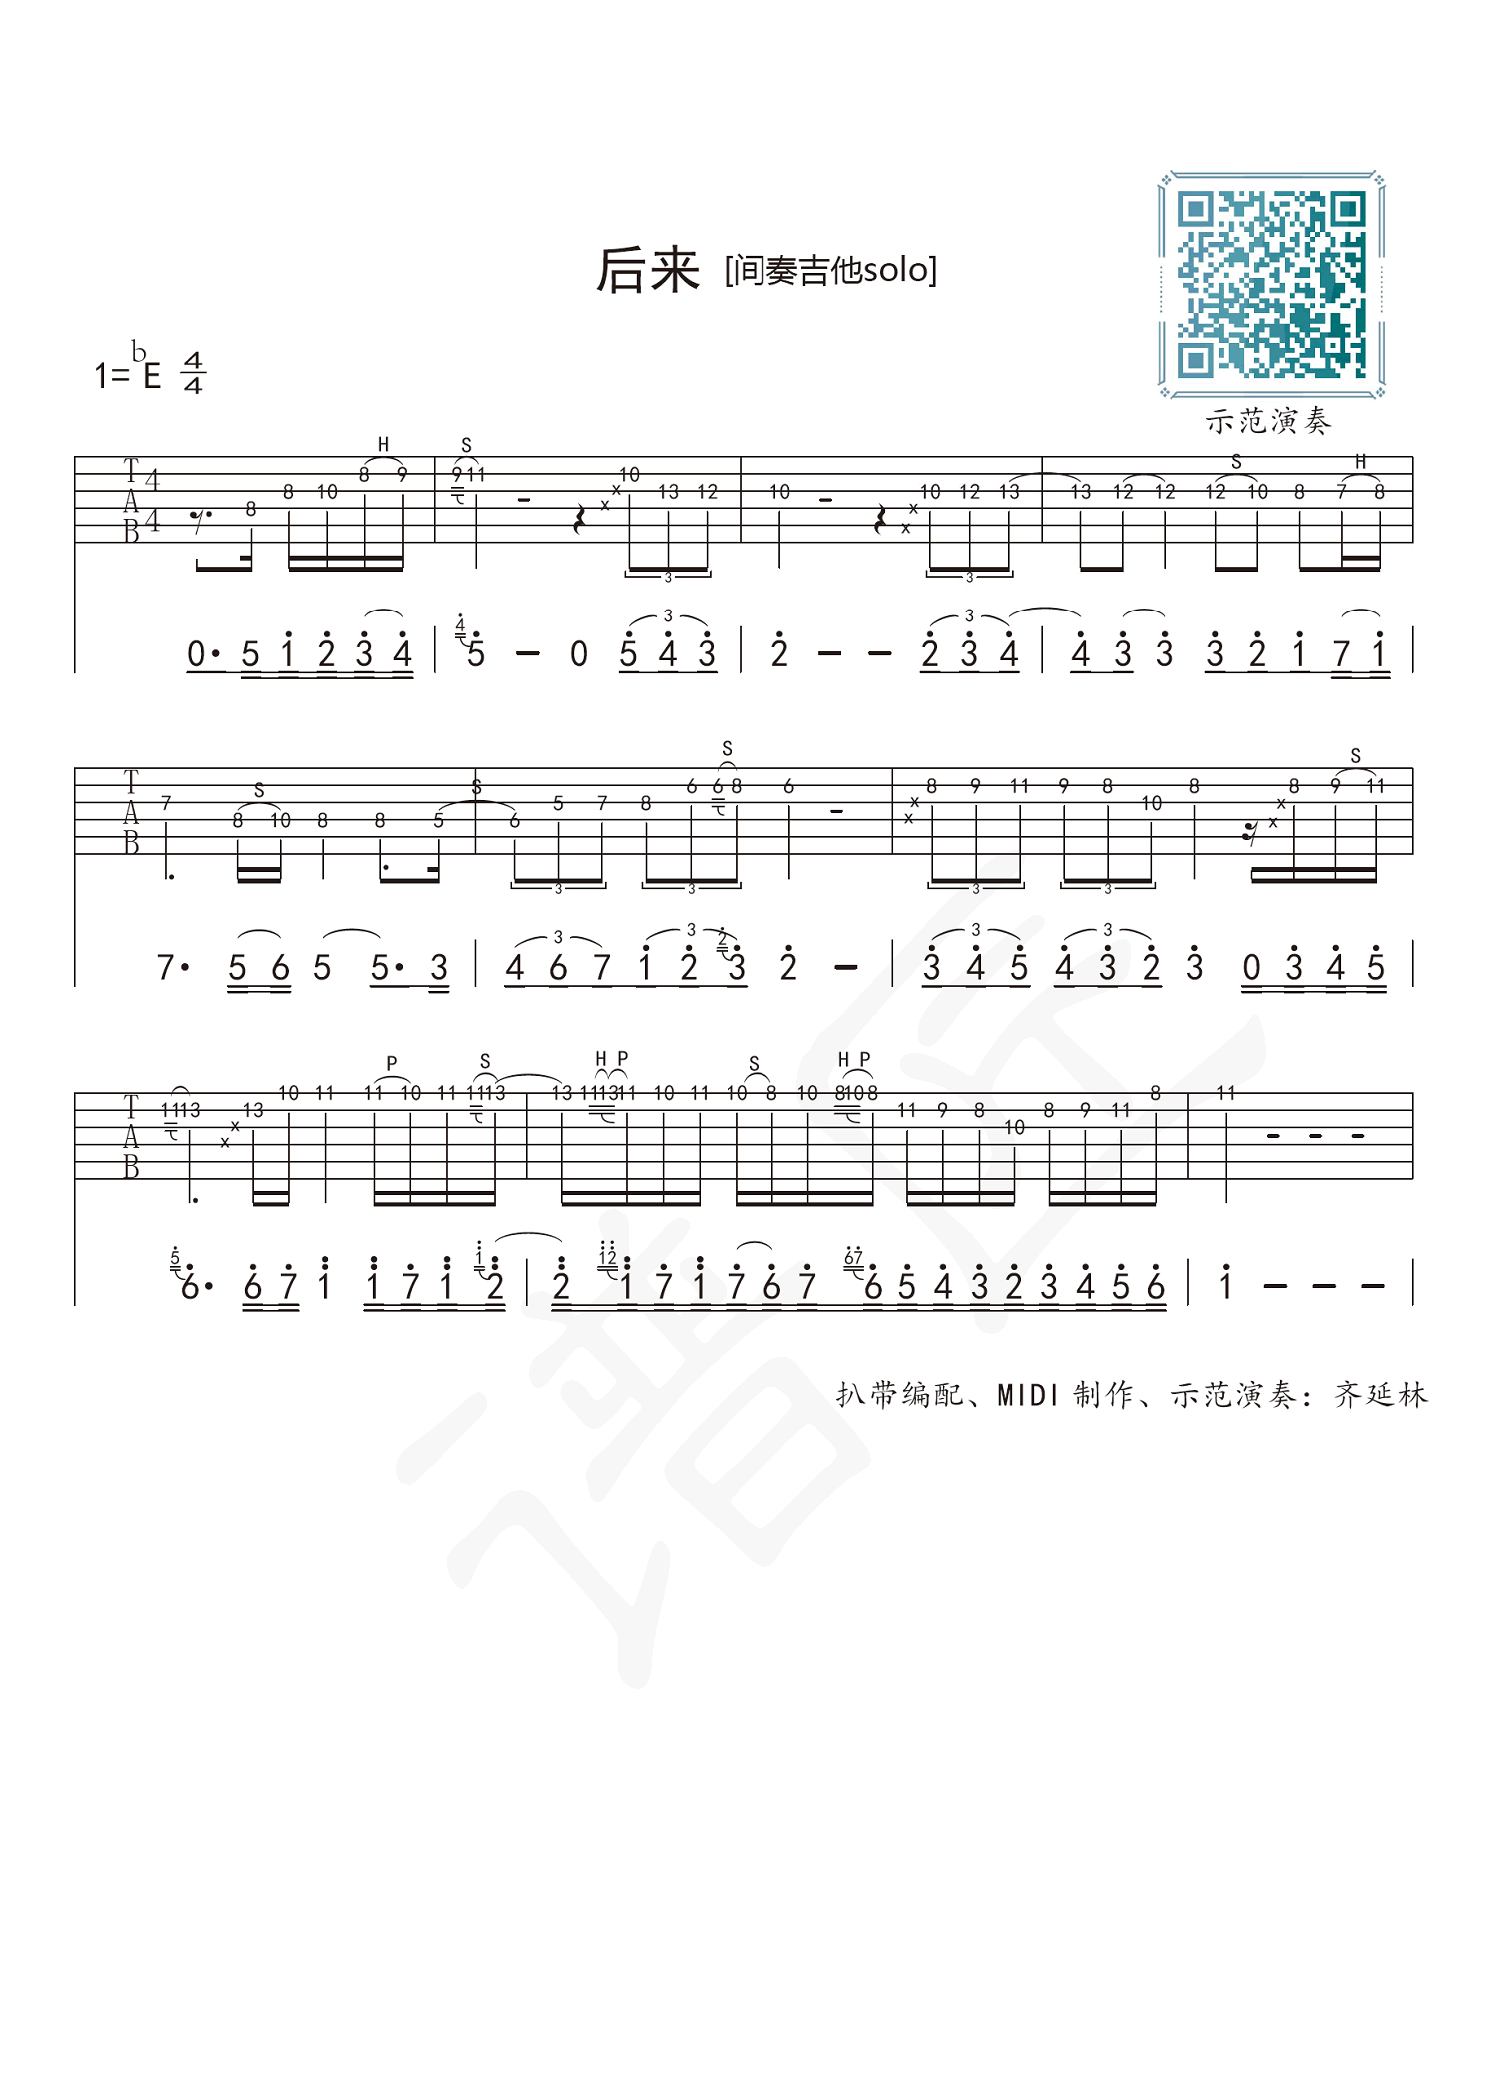 ★ 双星情歌- PDF琴譜免費下載 | 香港流行鋼琴協會 ★